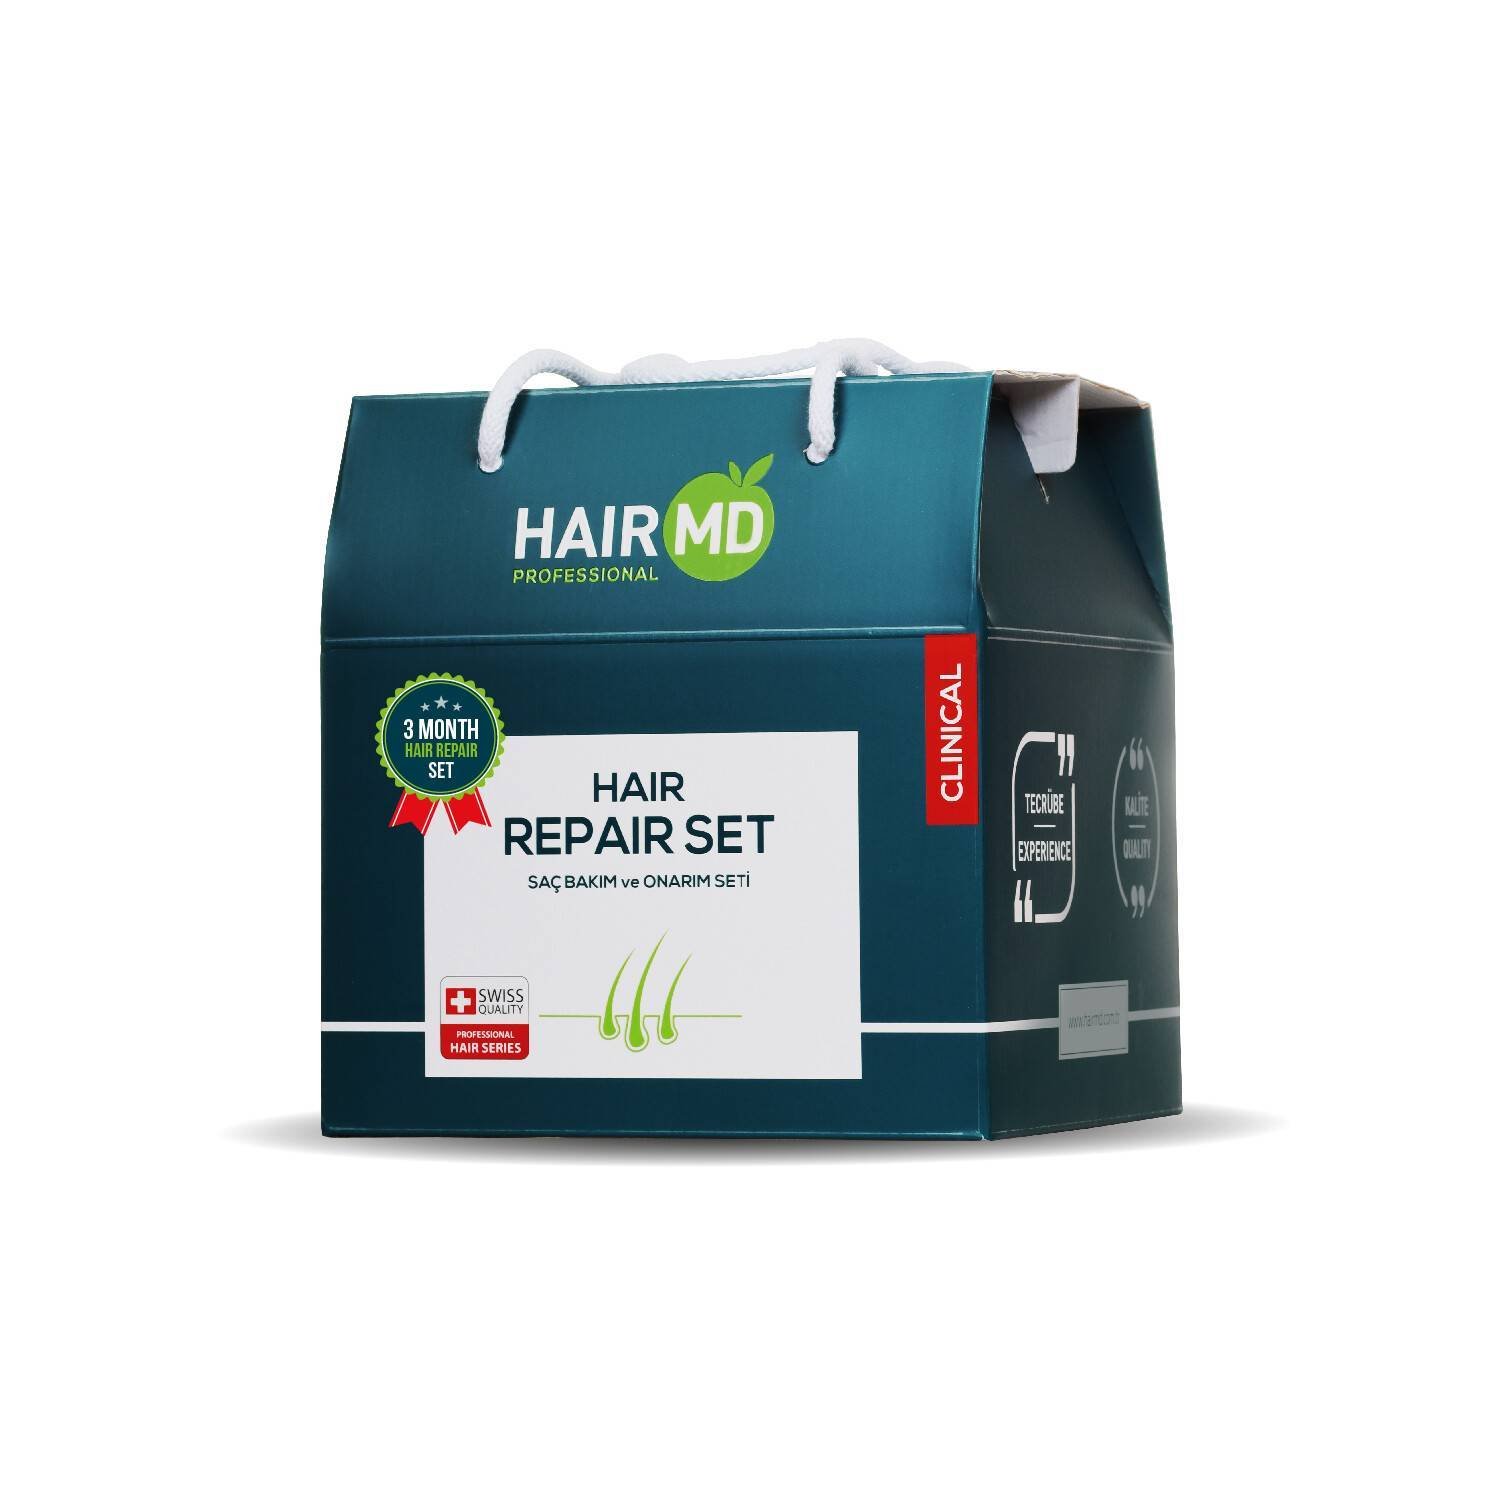 HairMD Clinical Hair Repair Set (3 month Use)